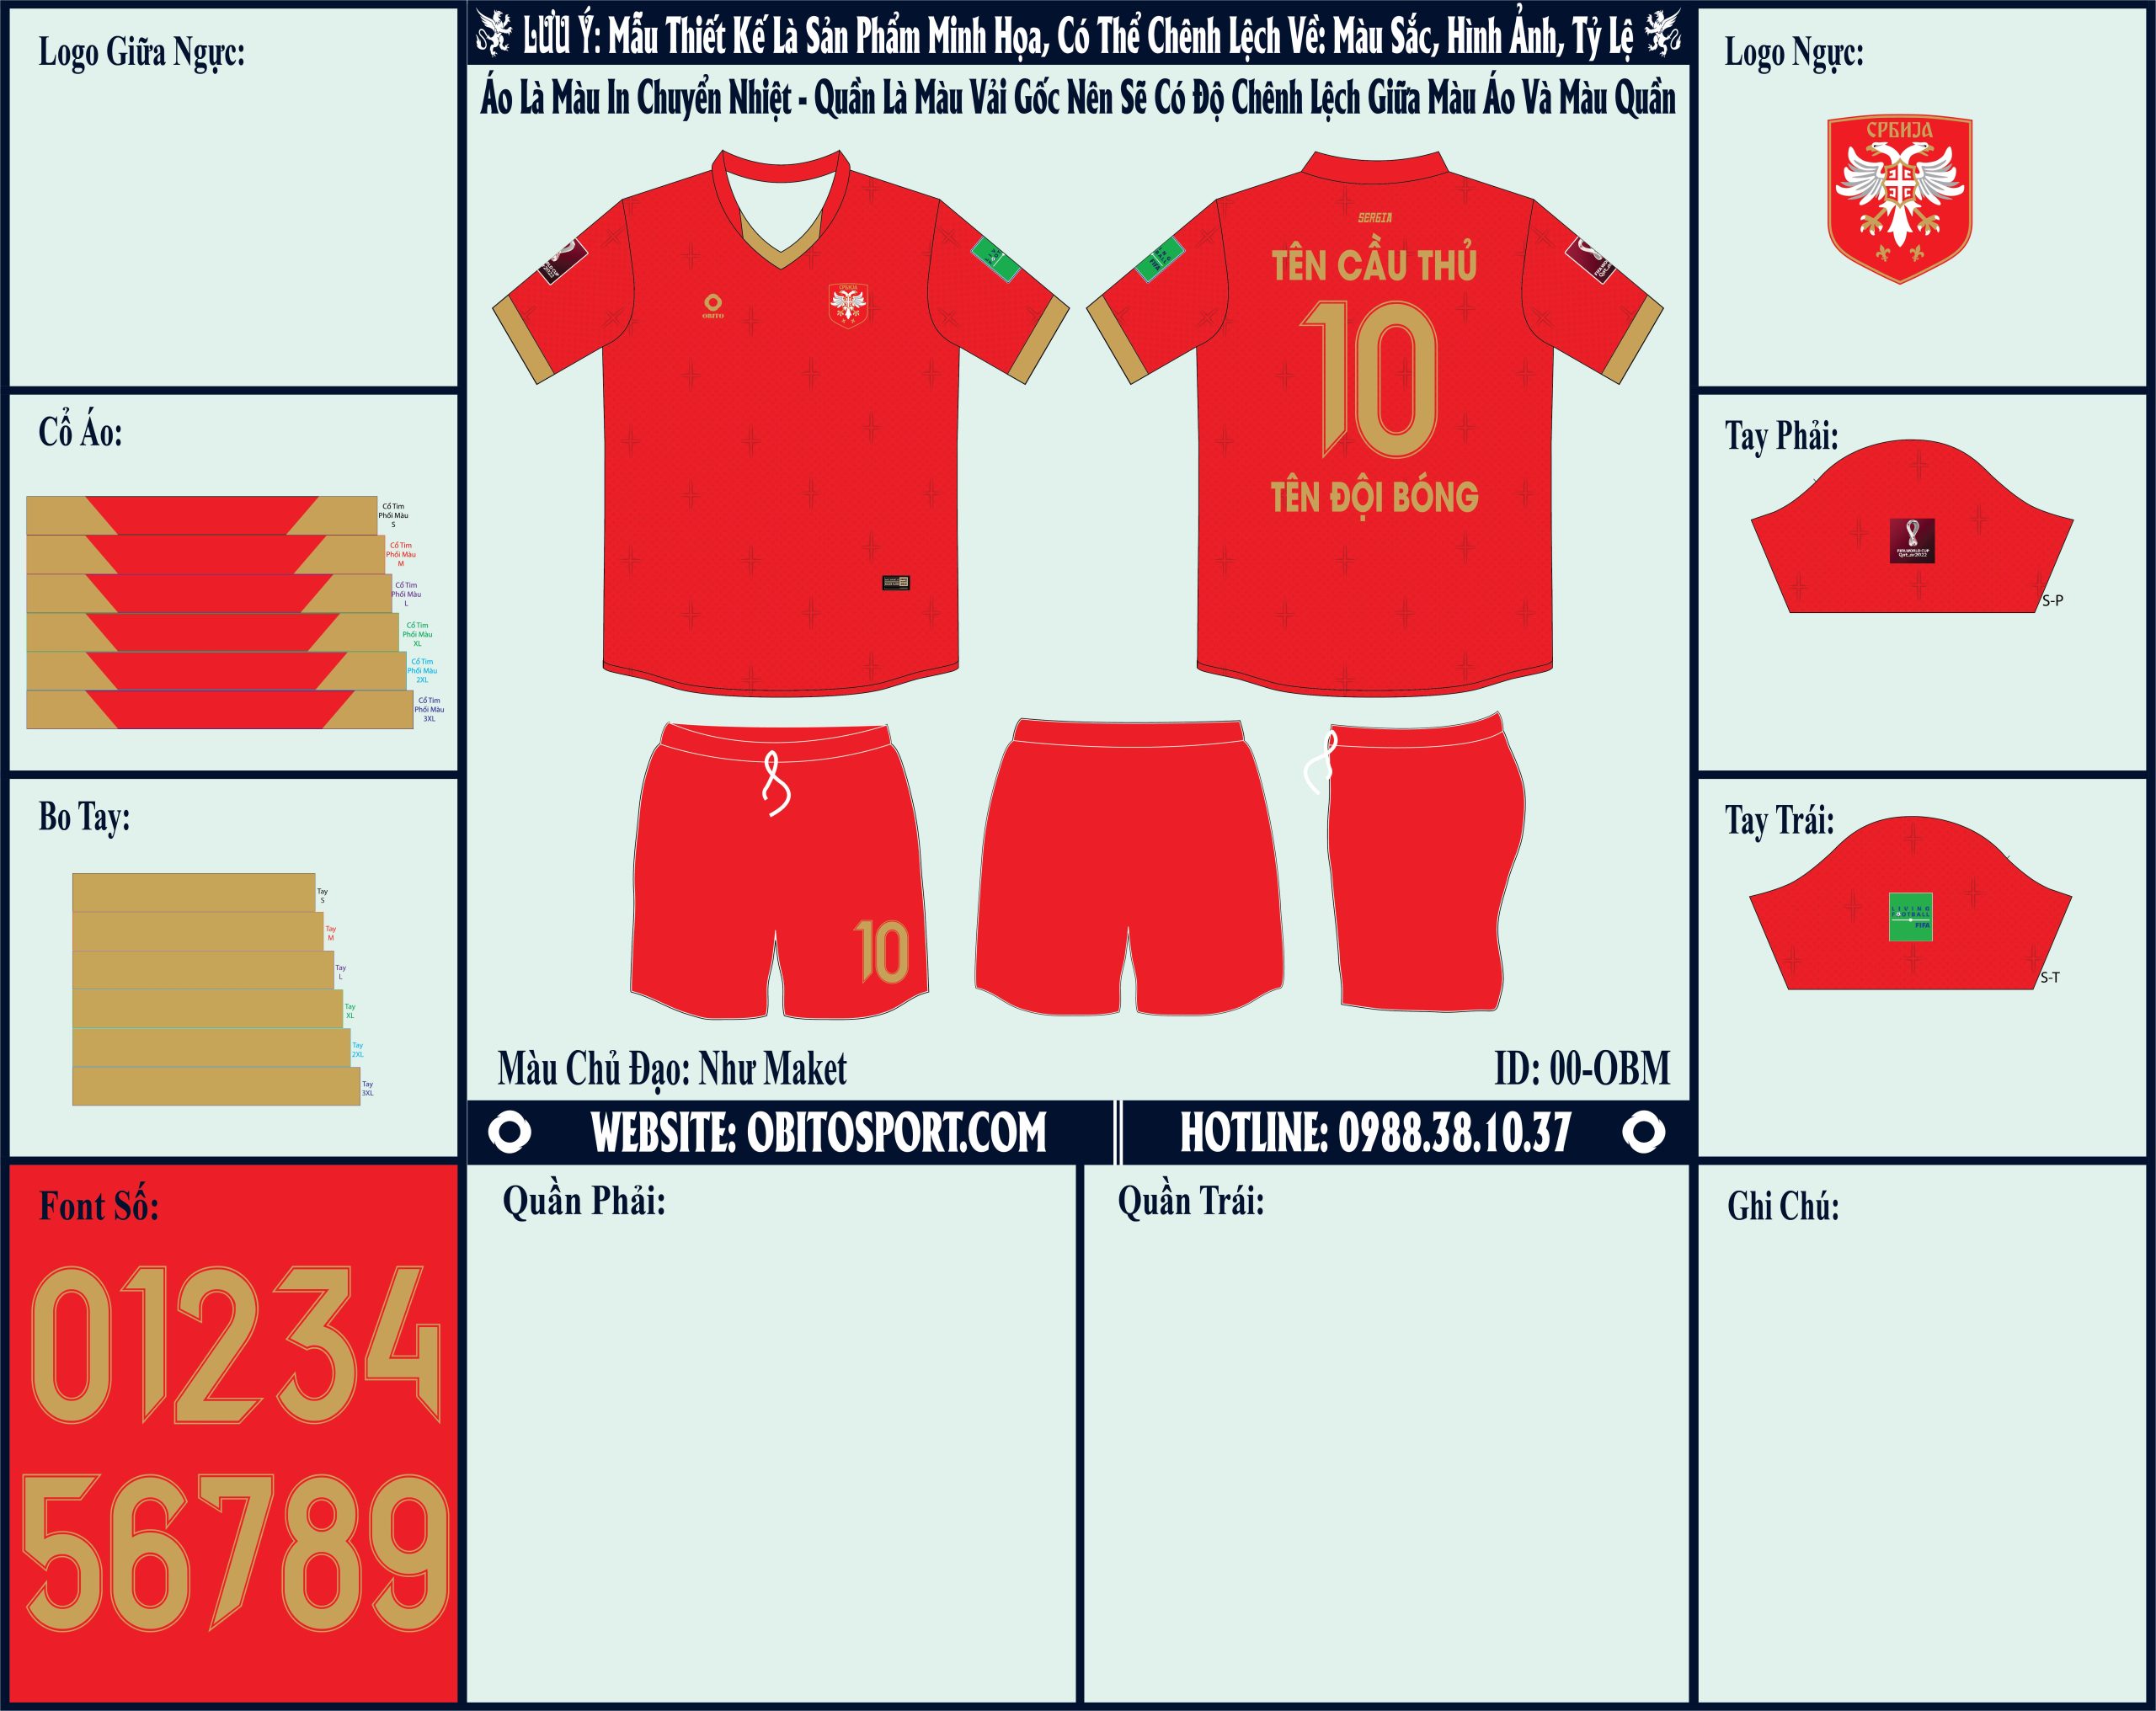 Mẫu ảnh áo đội tuyển Serbia sân nhà World Cup 2022 Market - Chúng ta sẽ thấy sự xuất hiện màu đỏ làm gam màu chủ đạo. Màu sắc này áp dụng cho mặt trước và mặt sau của áo. Còn chiếc quần short đi kèm sẽ là cùng gam màu. Sự phổi hợp của gam màu này mang đến sự khỏe khoắn và nét đẹp cần có để hoàn thiện cho bộ trang phục áo đấu.